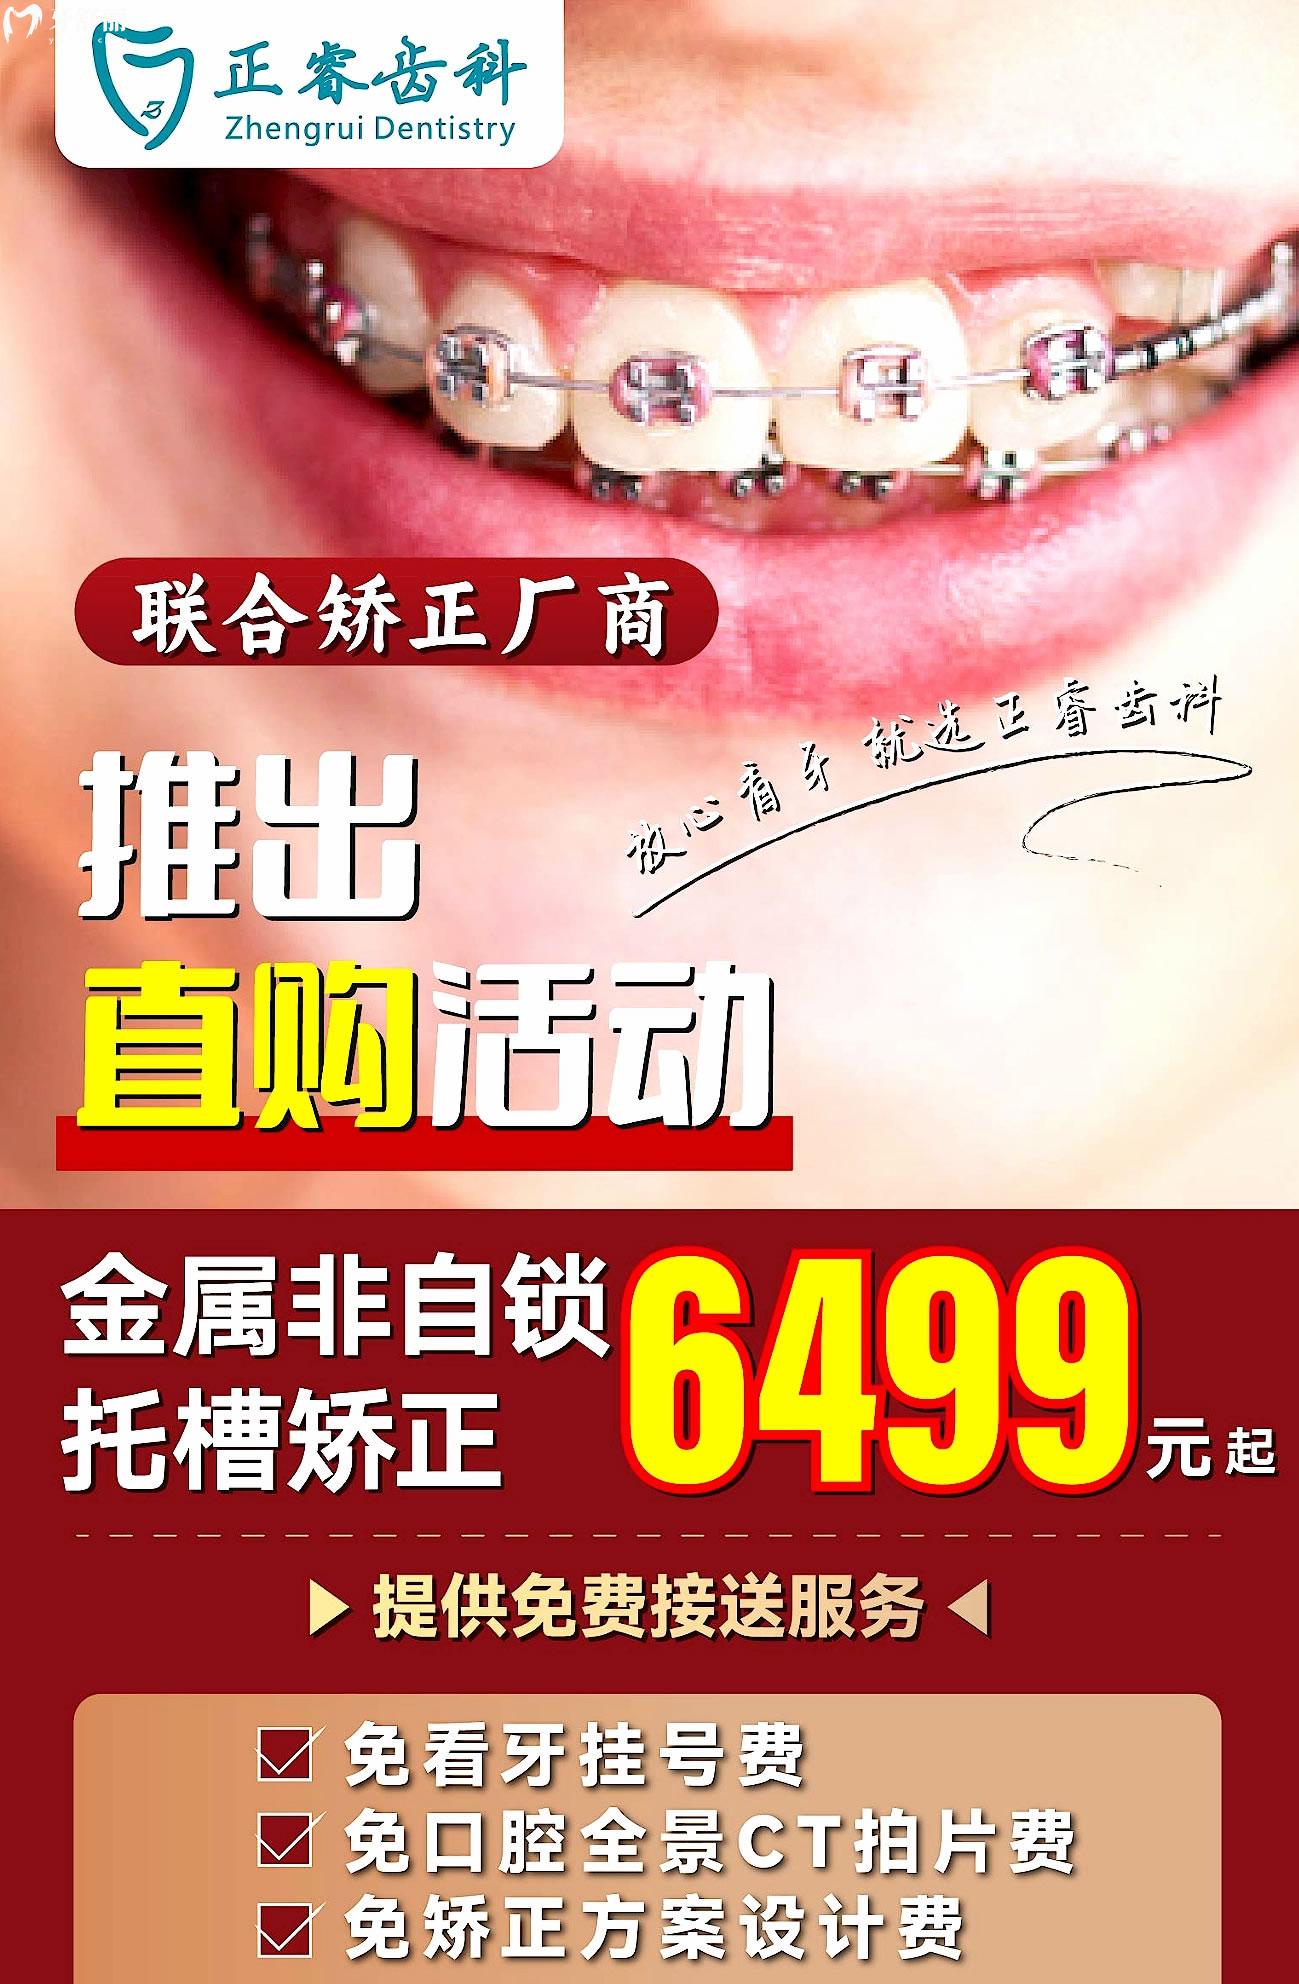 上海正睿齿科收费标准怎么样?进口半口种植牙16800元起